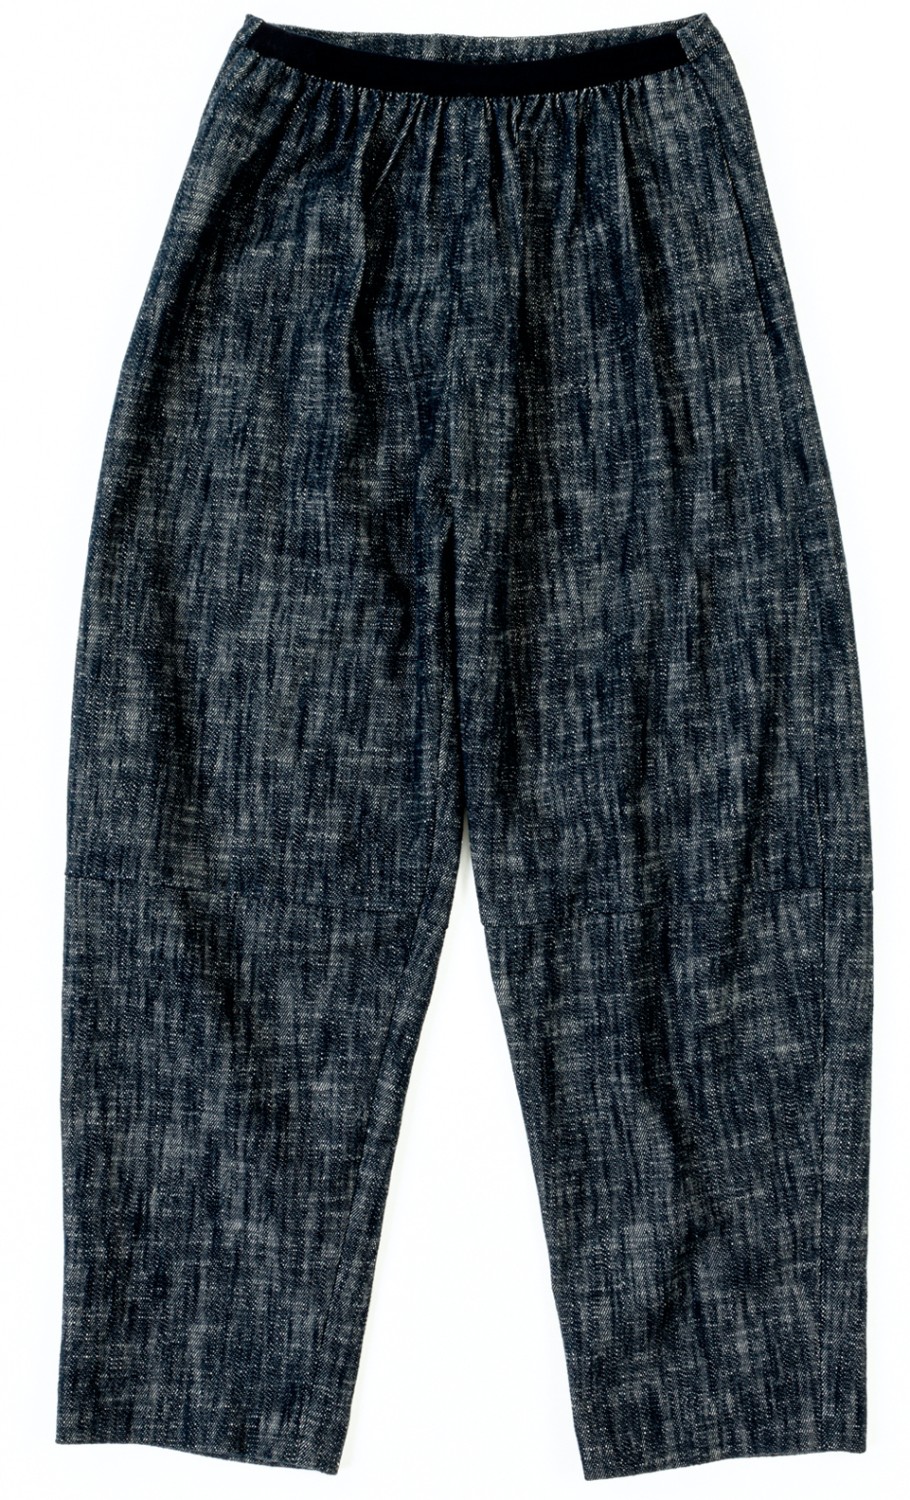 shop Sara Lanzi  Pantaloni: Pantaloni Sara Lanzi, denim, vita regolabile, elastico in vita, tasche posteriori, modello oversize.

Composizione: 100% cotone. number 2595